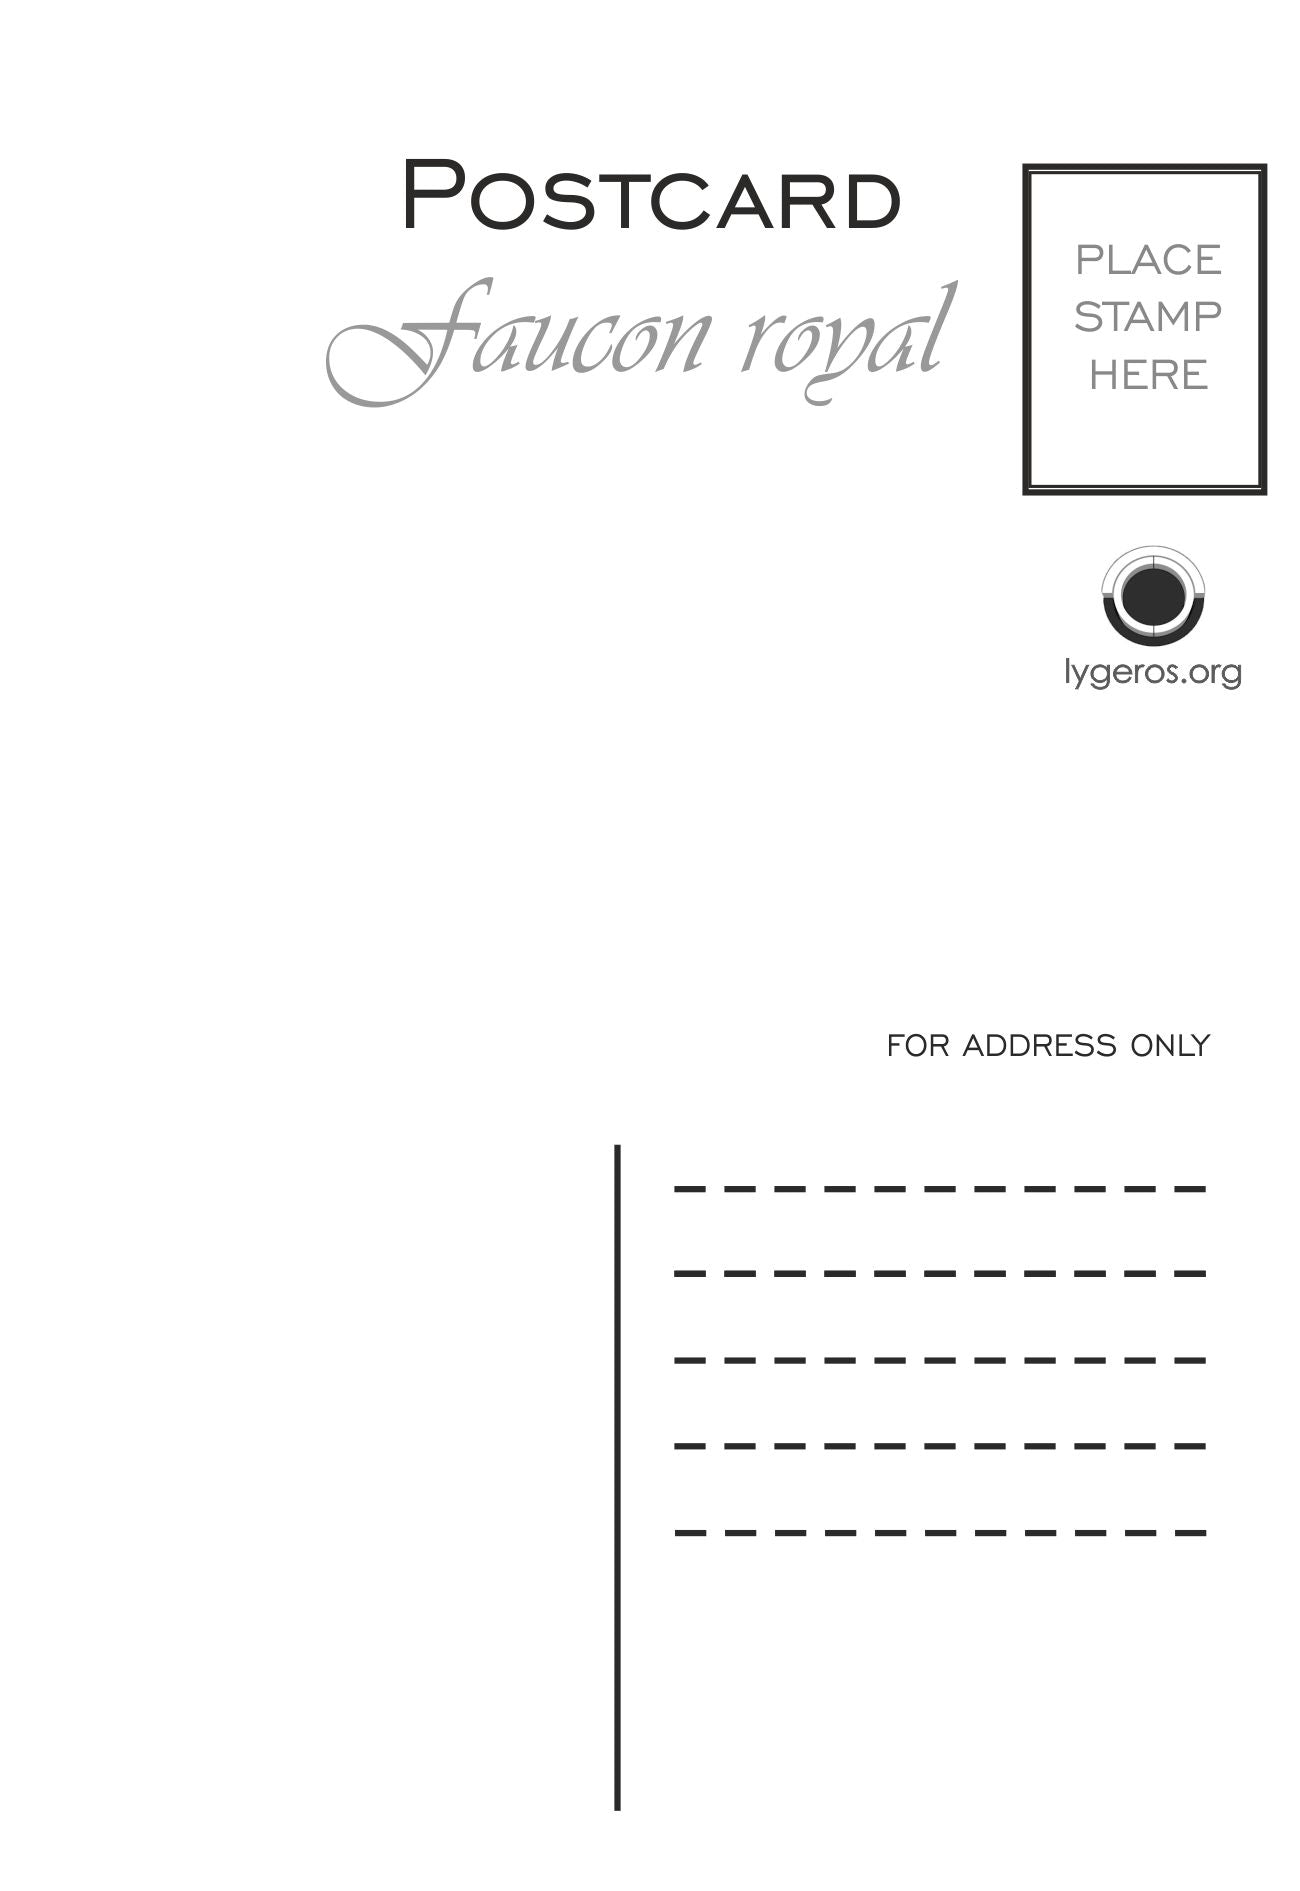 Faucon royal